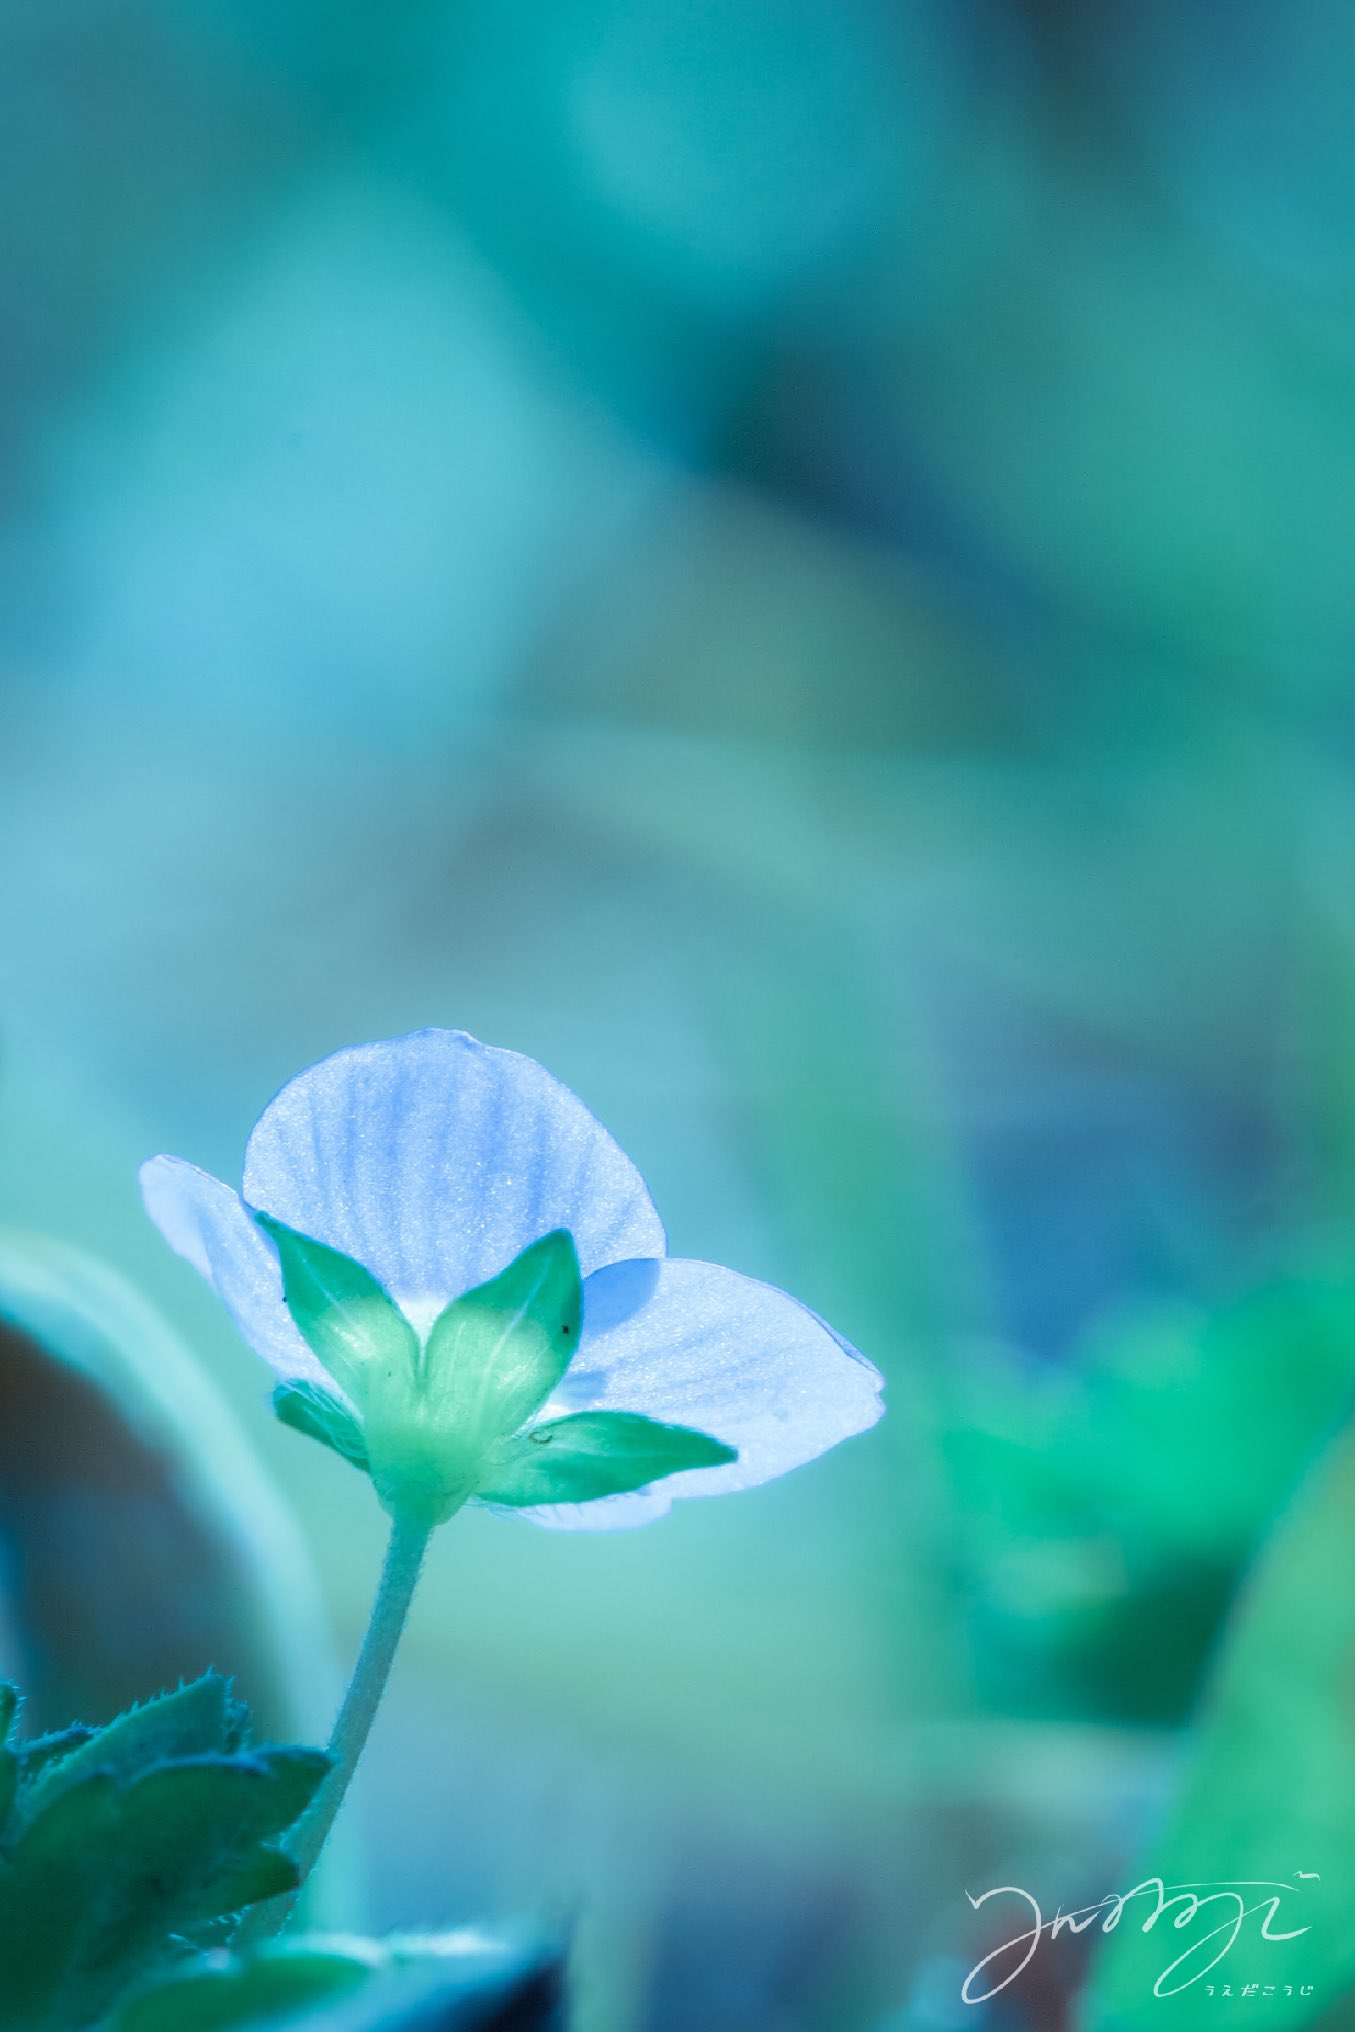 うえだこうじ ようこそ 地面スレスレの世界へ オオイヌフグリ 花 Flower 自然 Nature 青い花 地面スレスレ 東京 Tokyo 写真 Photo Photography T Co Nb6sdvit93 Twitter